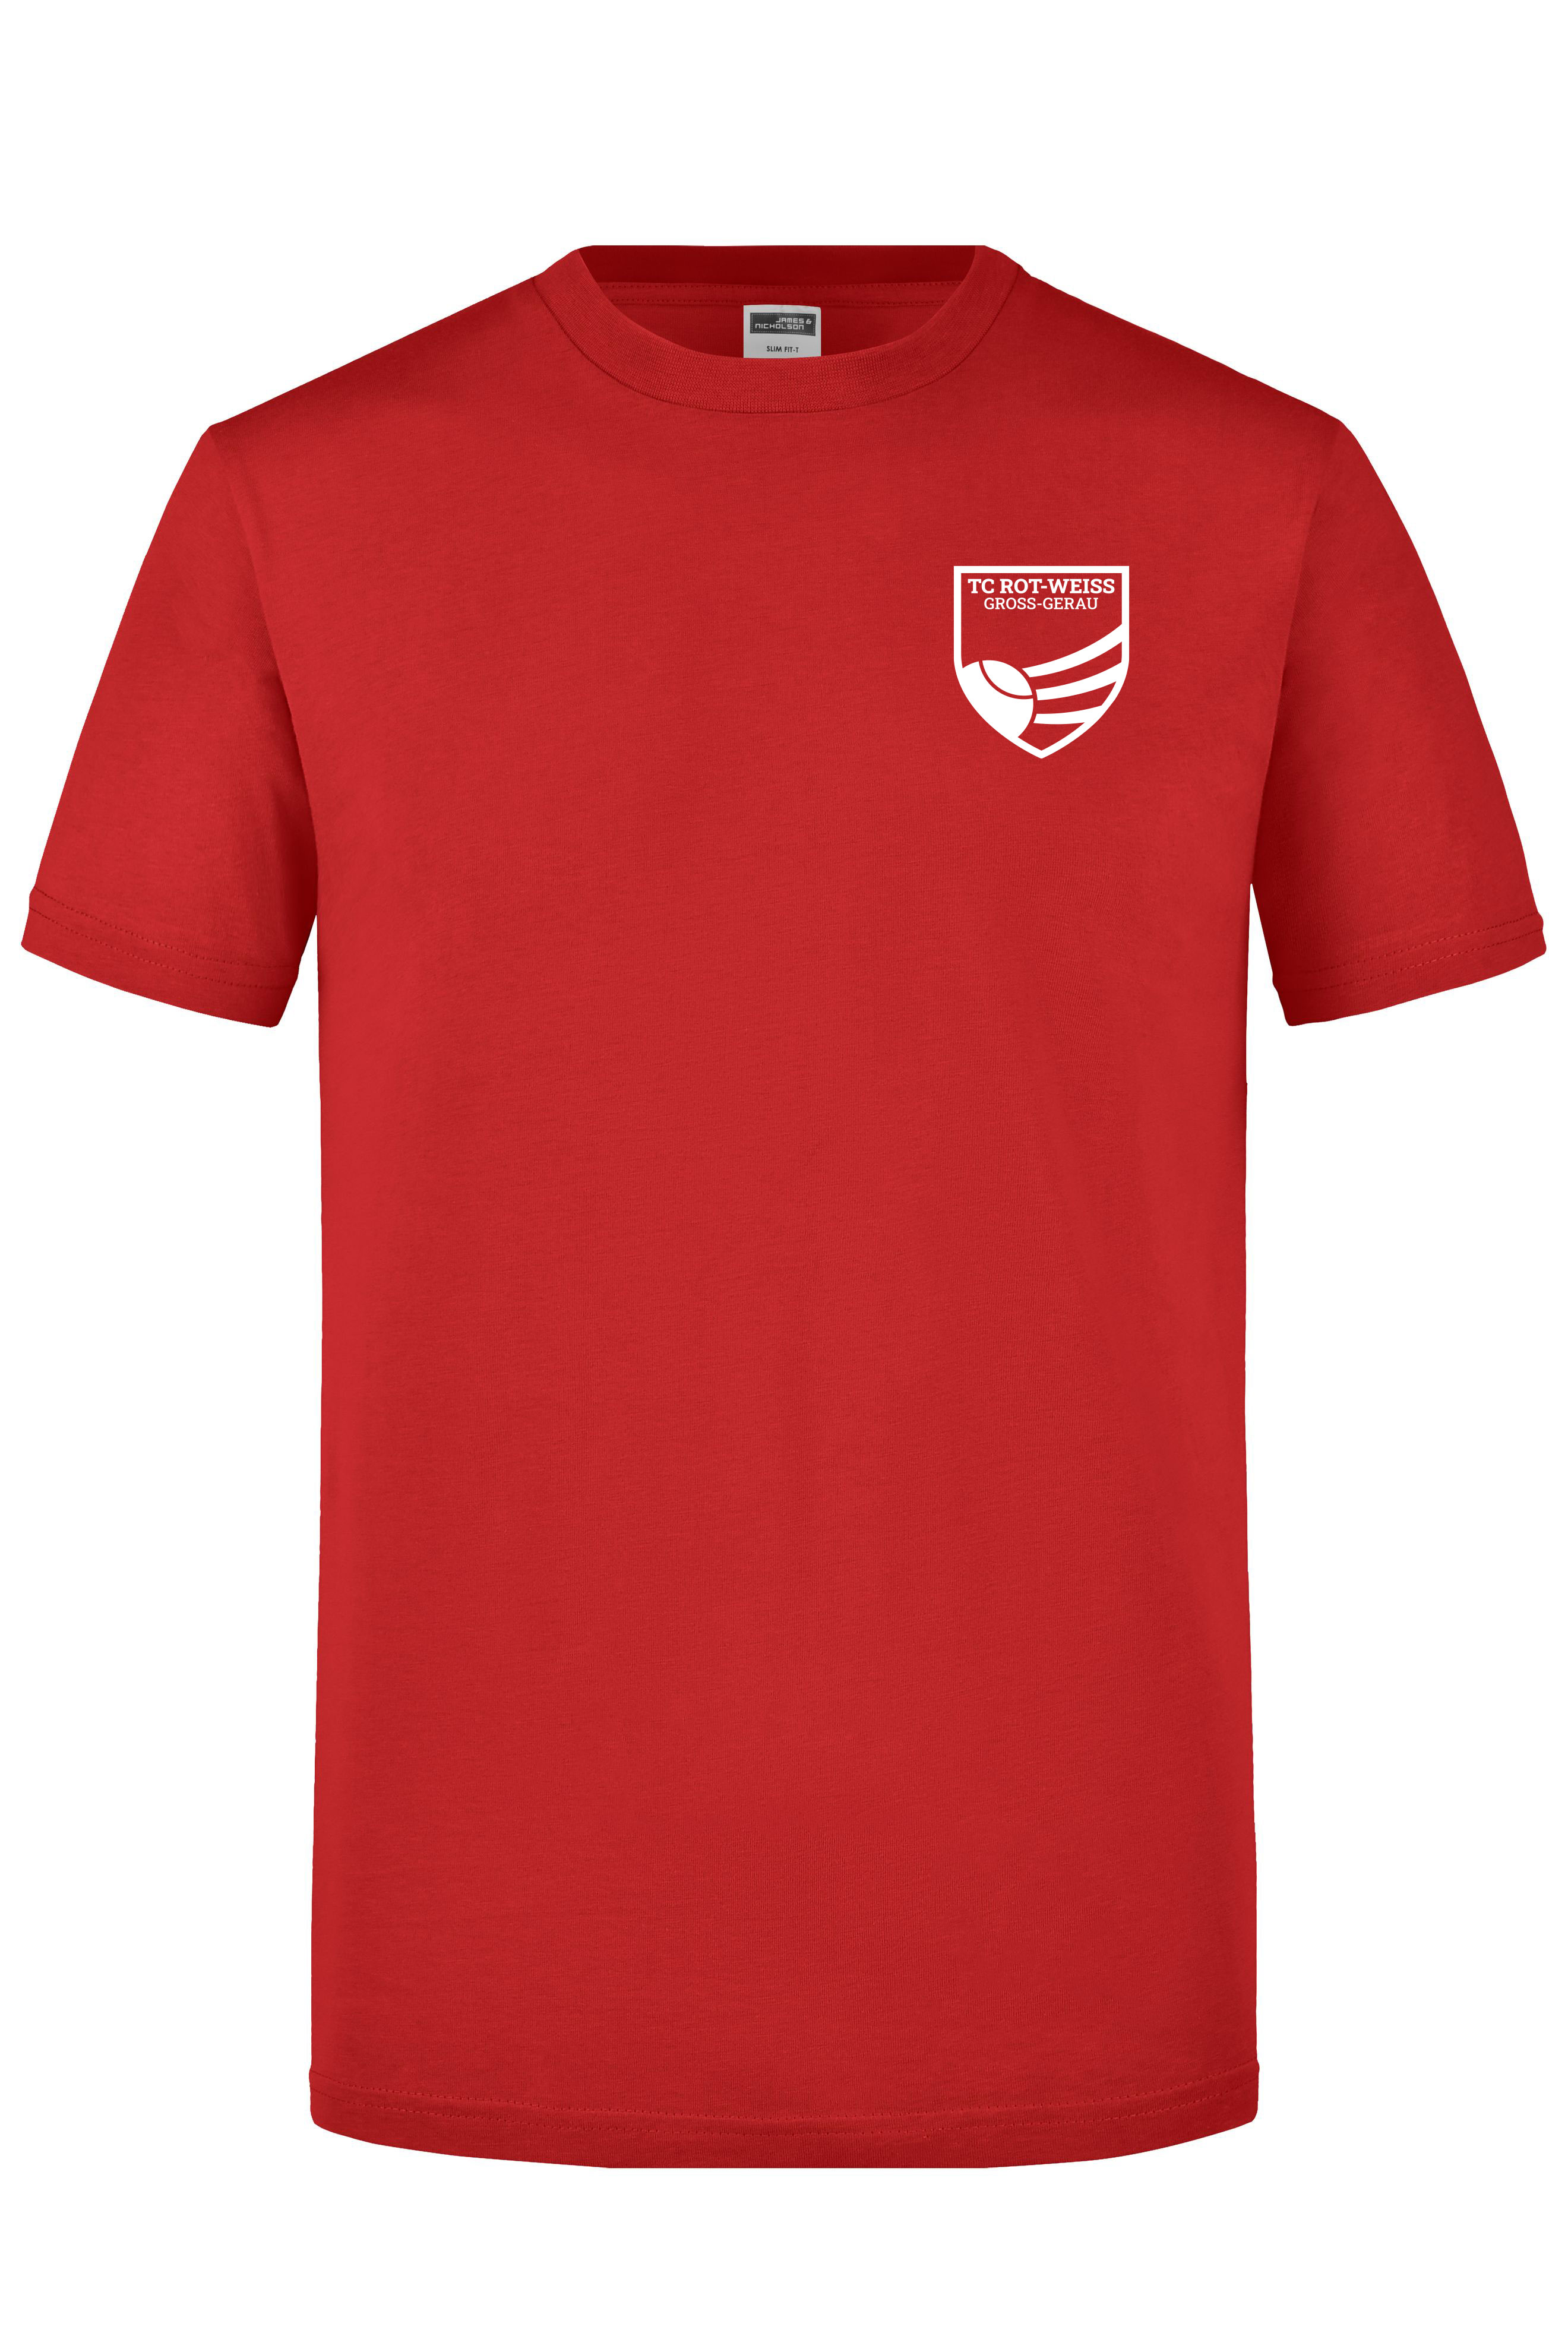 TC Rot-Weiss - Vorteil GG - T-Shirt weiss auf rot